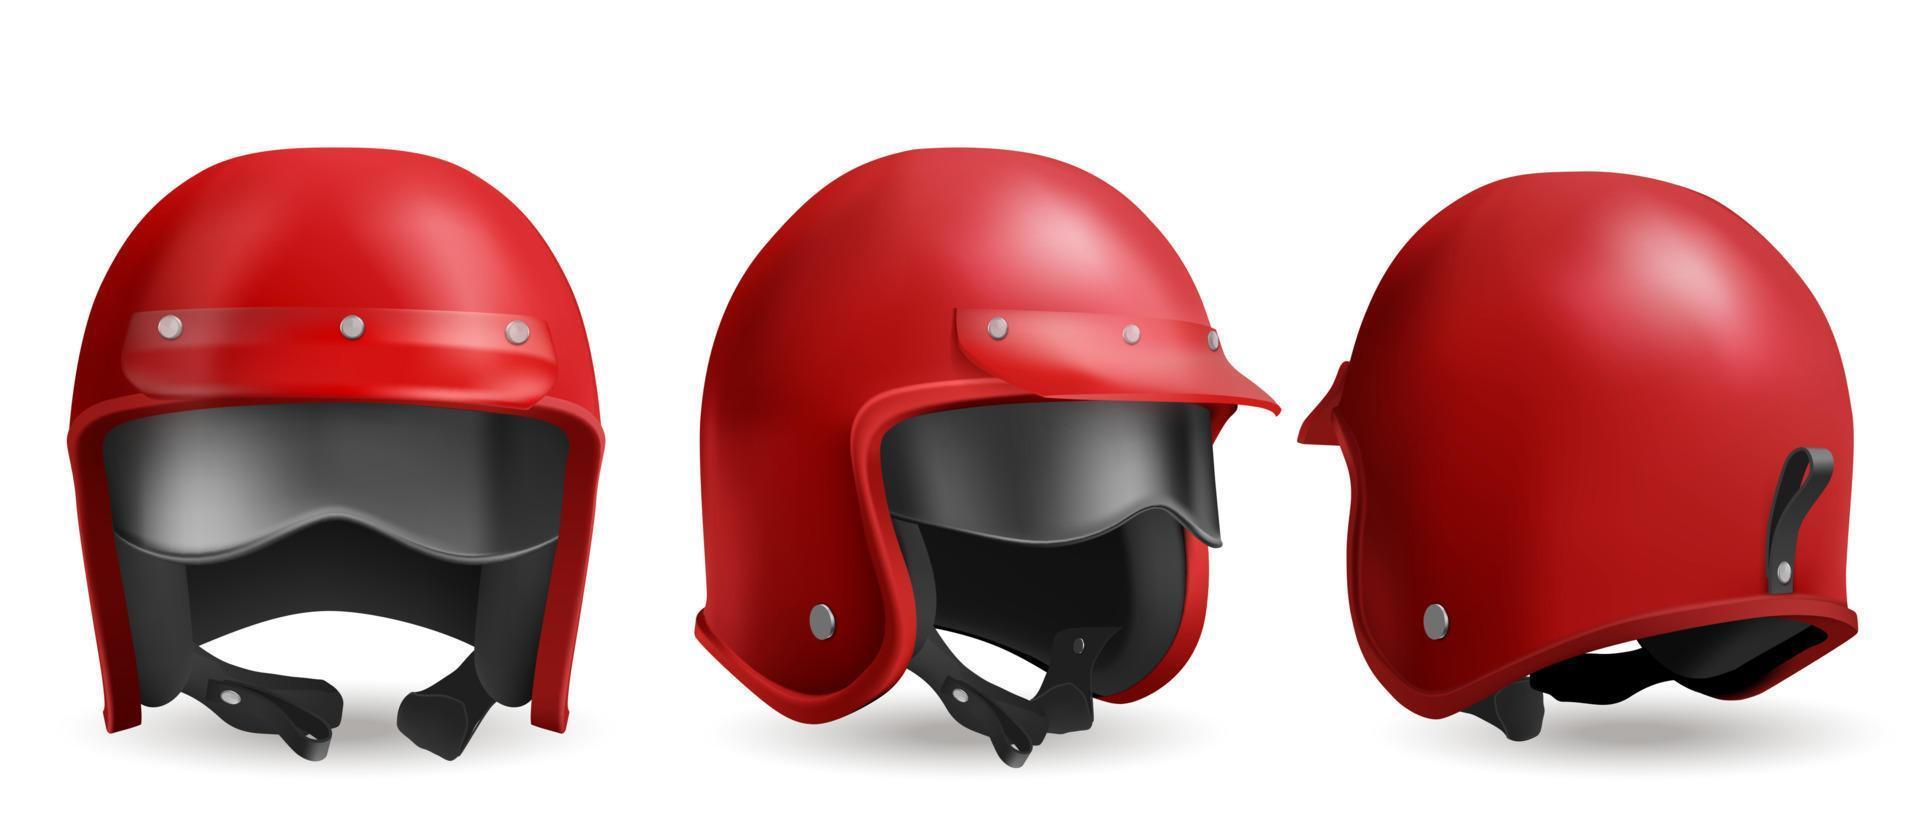 Red motorcycle helmet with glasses, biker headwear vector